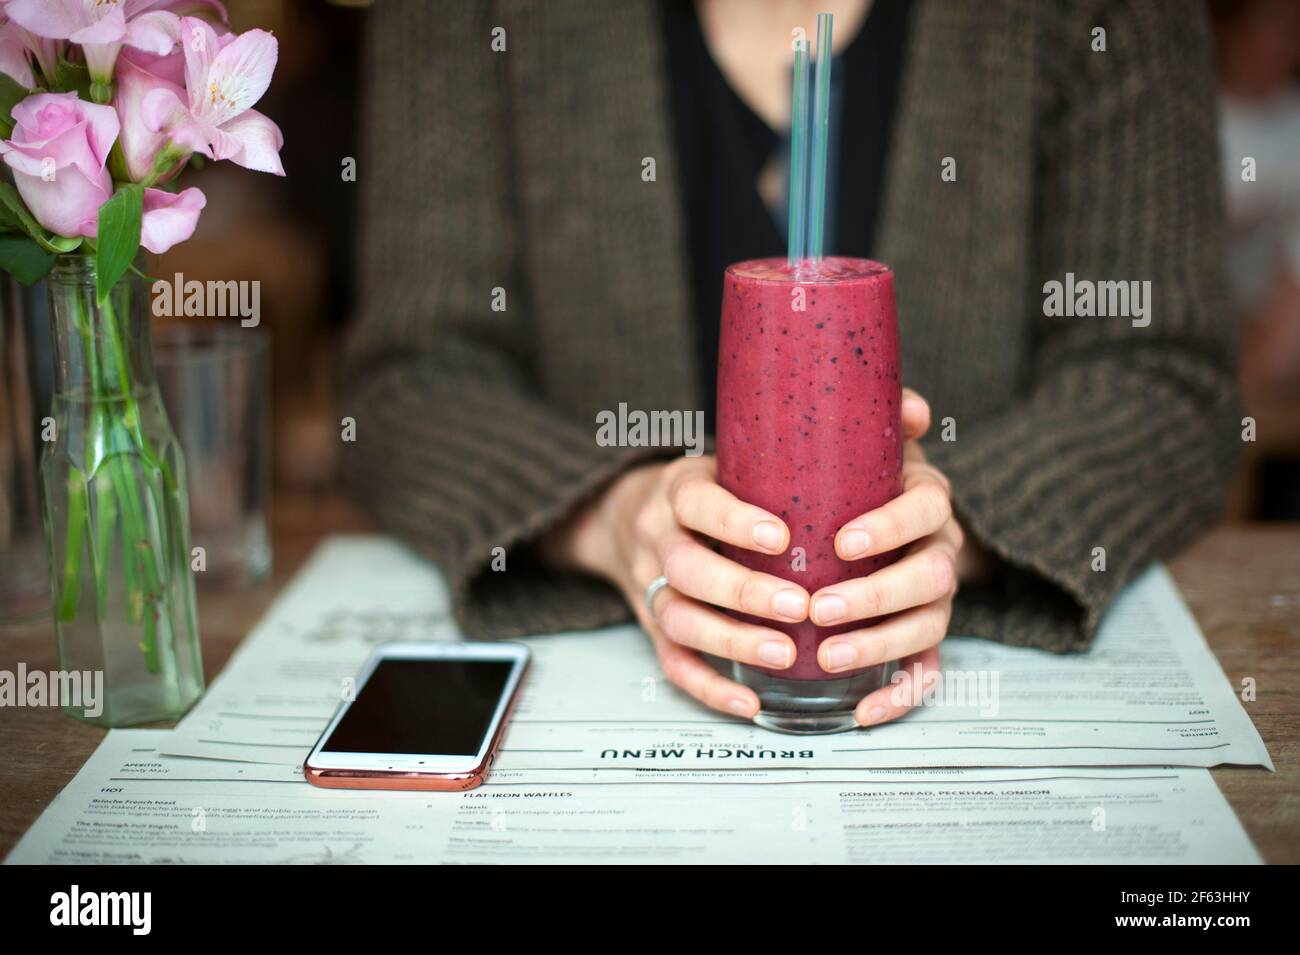 Manos femeninas sosteniendo batido de bayas rojas en el restaurante. Concepto de estilo de vida saludable. Londres, Reino Unido Foto de stock